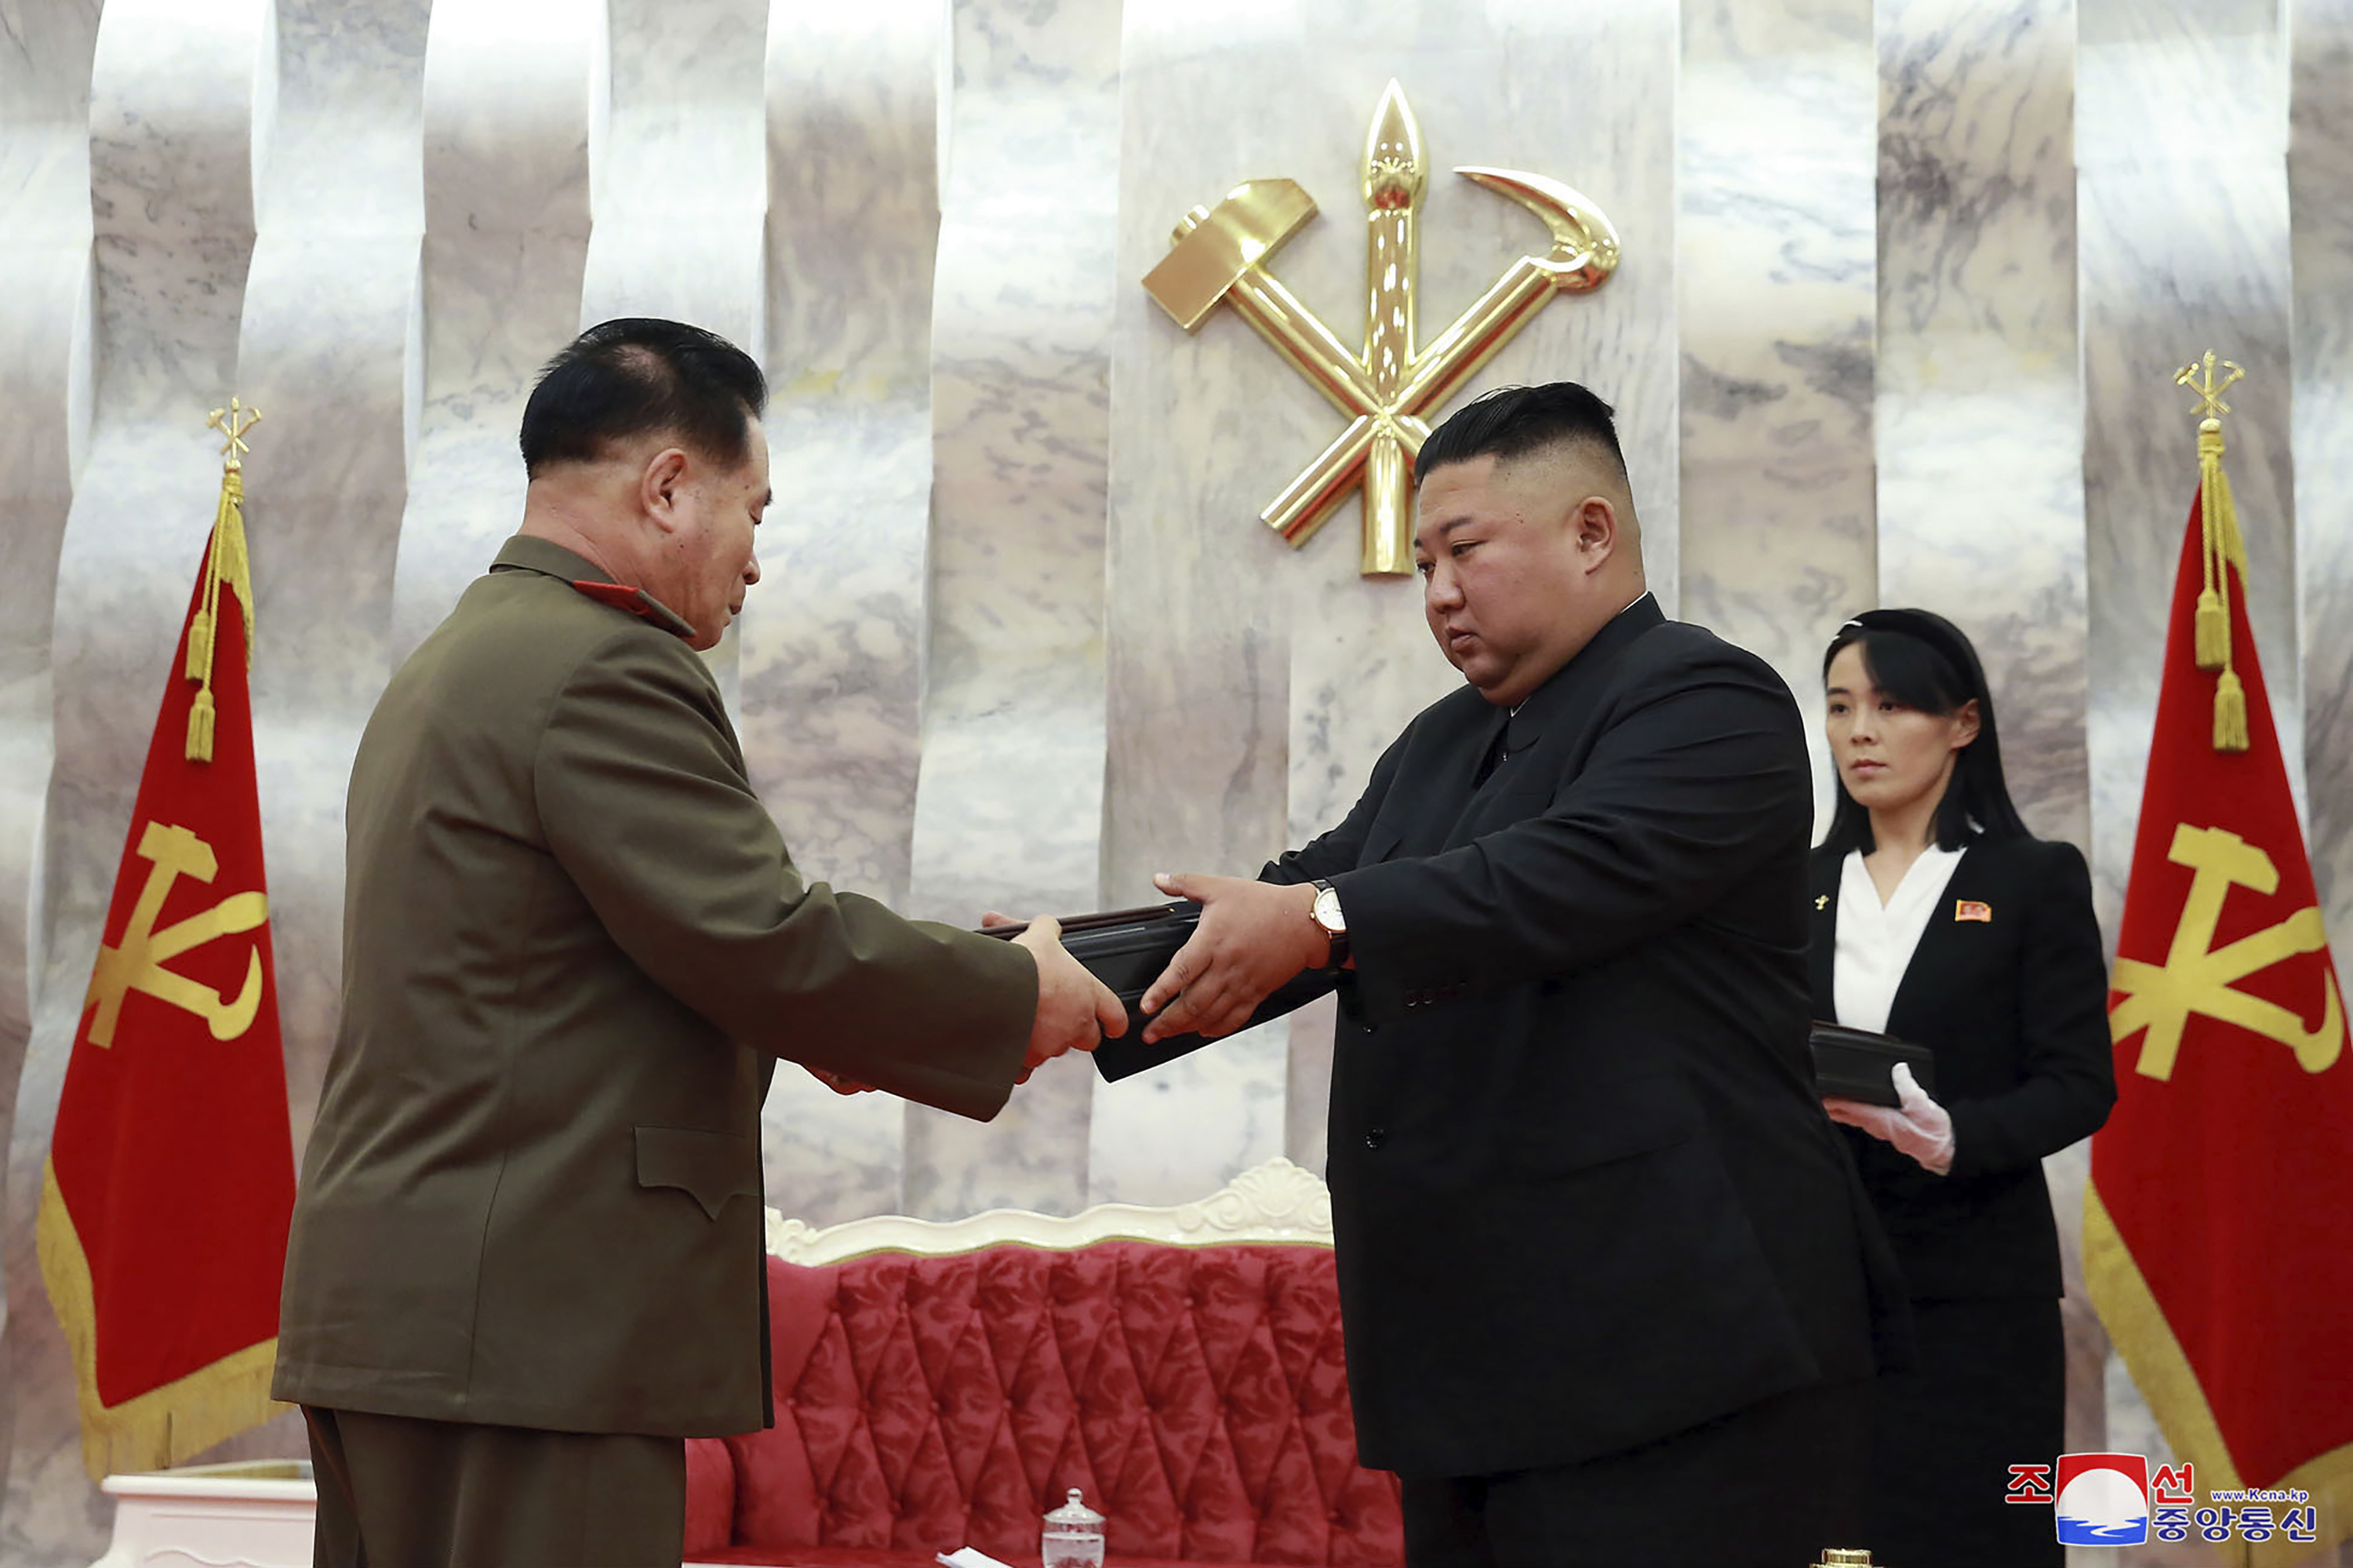 En esta imagen del domingo 26 de julio de 2020, el líder de Corea del Norte, Kim Jong Un, entrega una pistola conmemorativa a un oficial del Ejército durante una ceremonia en Pyongyang, Corea del Norte. A la derecha se ve la influyente hermana de Kim, Kim Yo Jong. (Agencia Central de Noticias de Corea/Servicio de Noticias de Corea via AP)